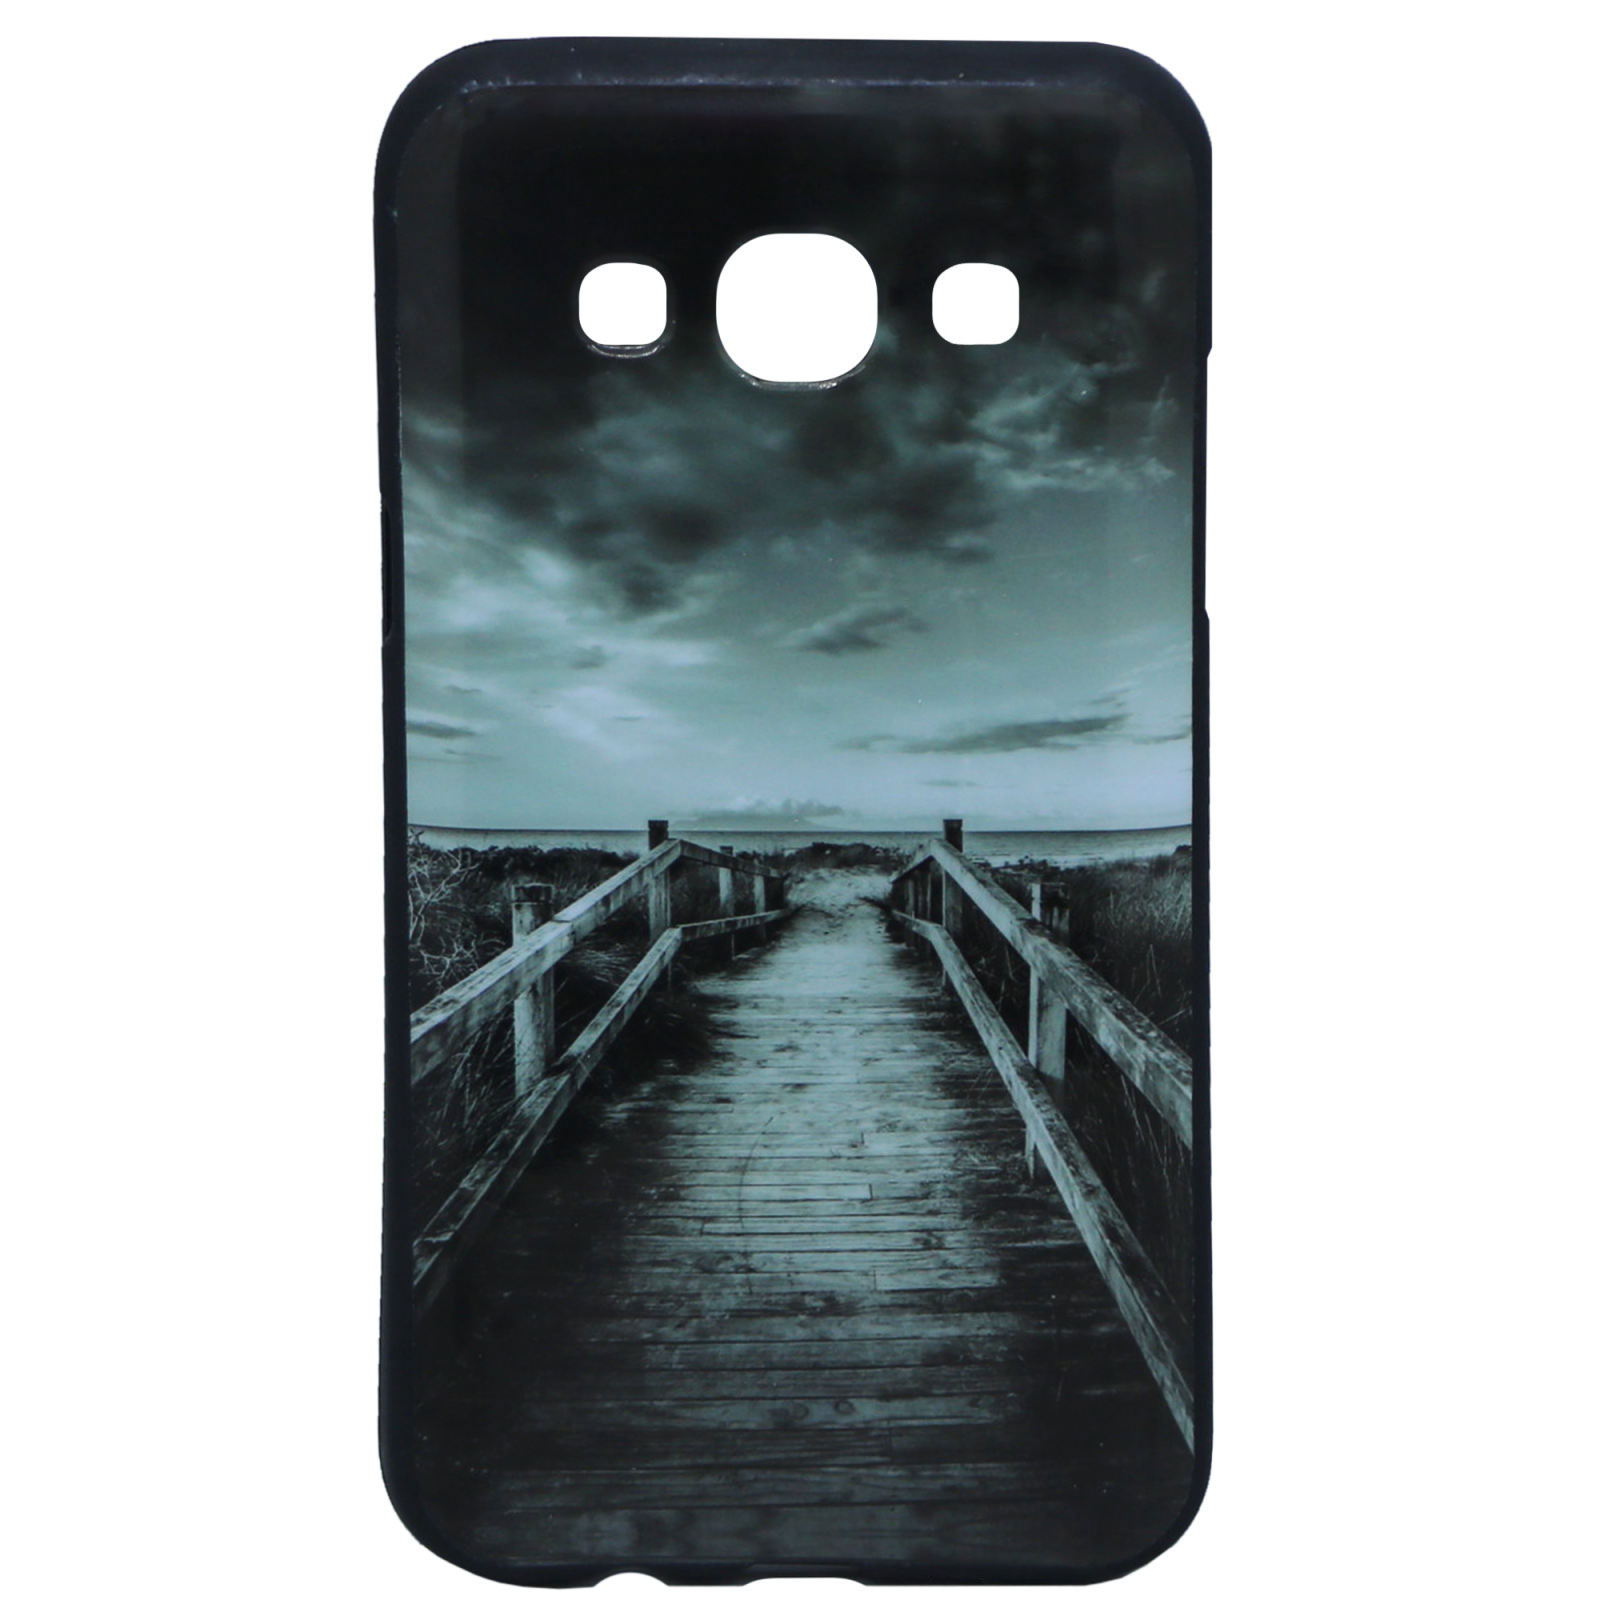 کاور طرح پل مدل TD-01 مناسب برای گوشی موبایل سامسونگ Galaxy A7 2015